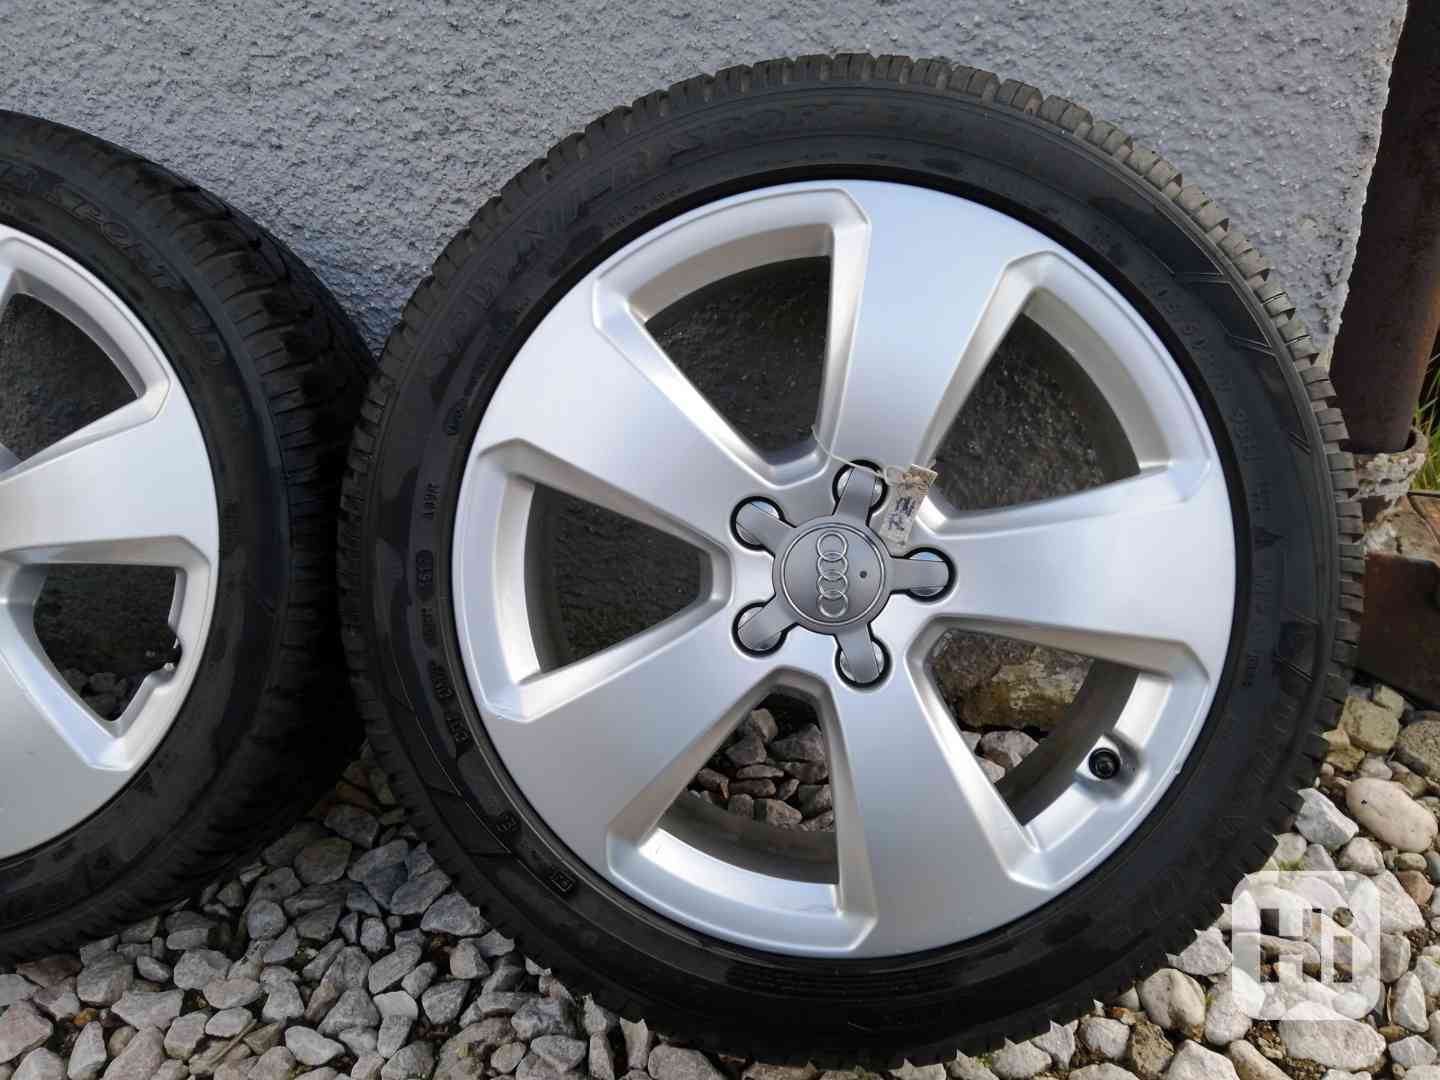 ALU kola AUDI 17“, vč. zimních pneu Dunlop - foto 1